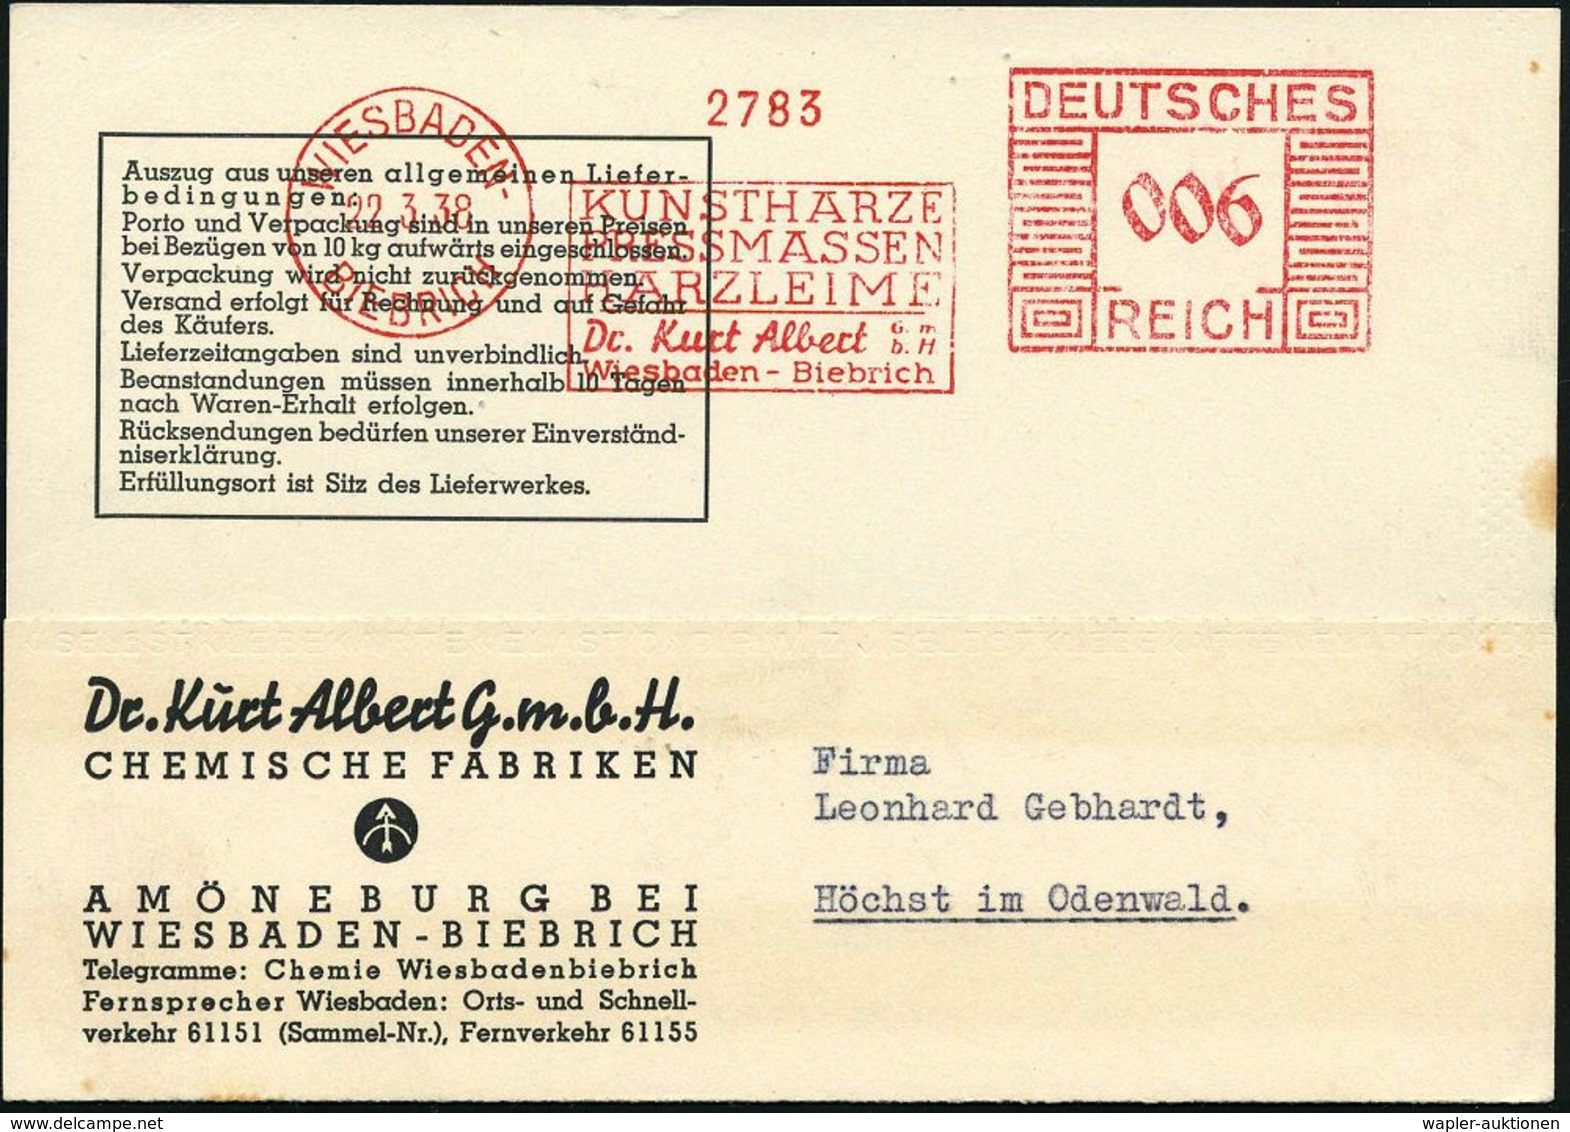 KUNSTSTOFFE & -FASERN / PLASTIK : WIESBADEN-/ BIEBRICH/ KUNSTHARZE/ PRESSMASSEN/ HARZLEIME/ Dr.Kurt Albert.. 1938 (22.3. - Chimica